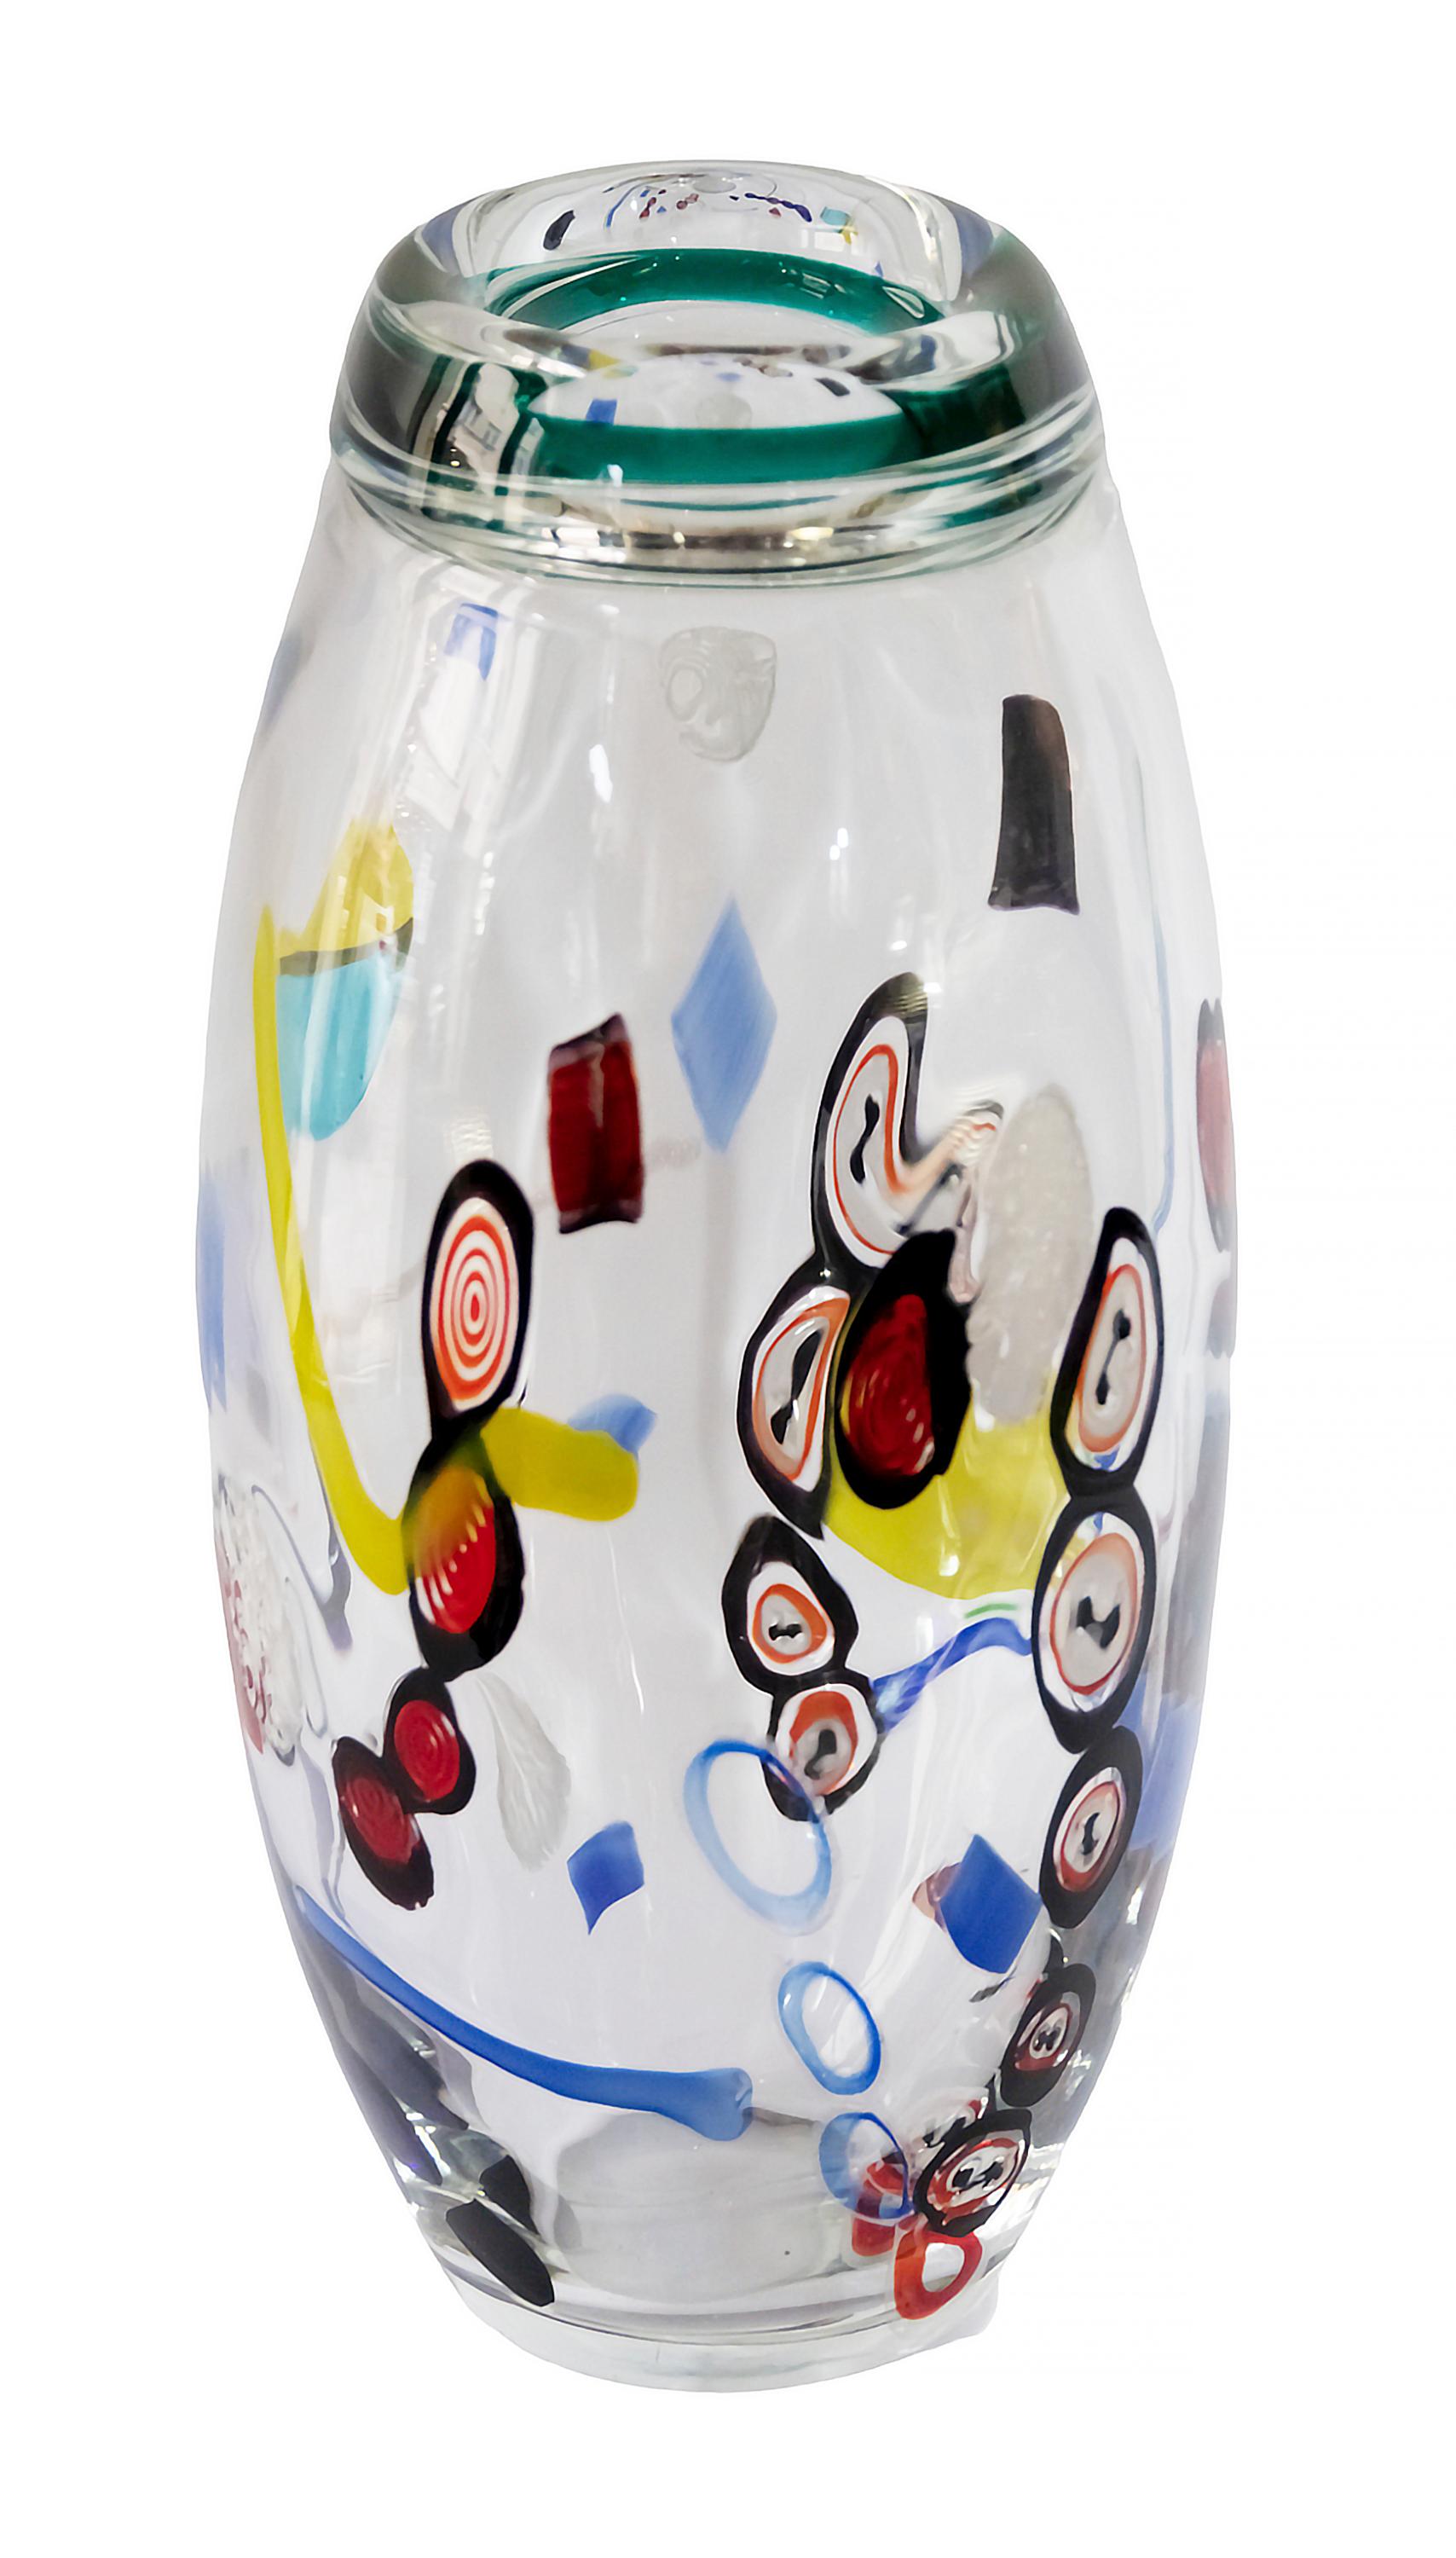 Italian handmade Seguso e Barovier Murano glass vase created by Maestro Vetraio in 1970s.
The vase is in clear Murano glass with inside and outside multicolor modern decor elements. 
Excellent condition.
Includes Certificato di Garanzia.